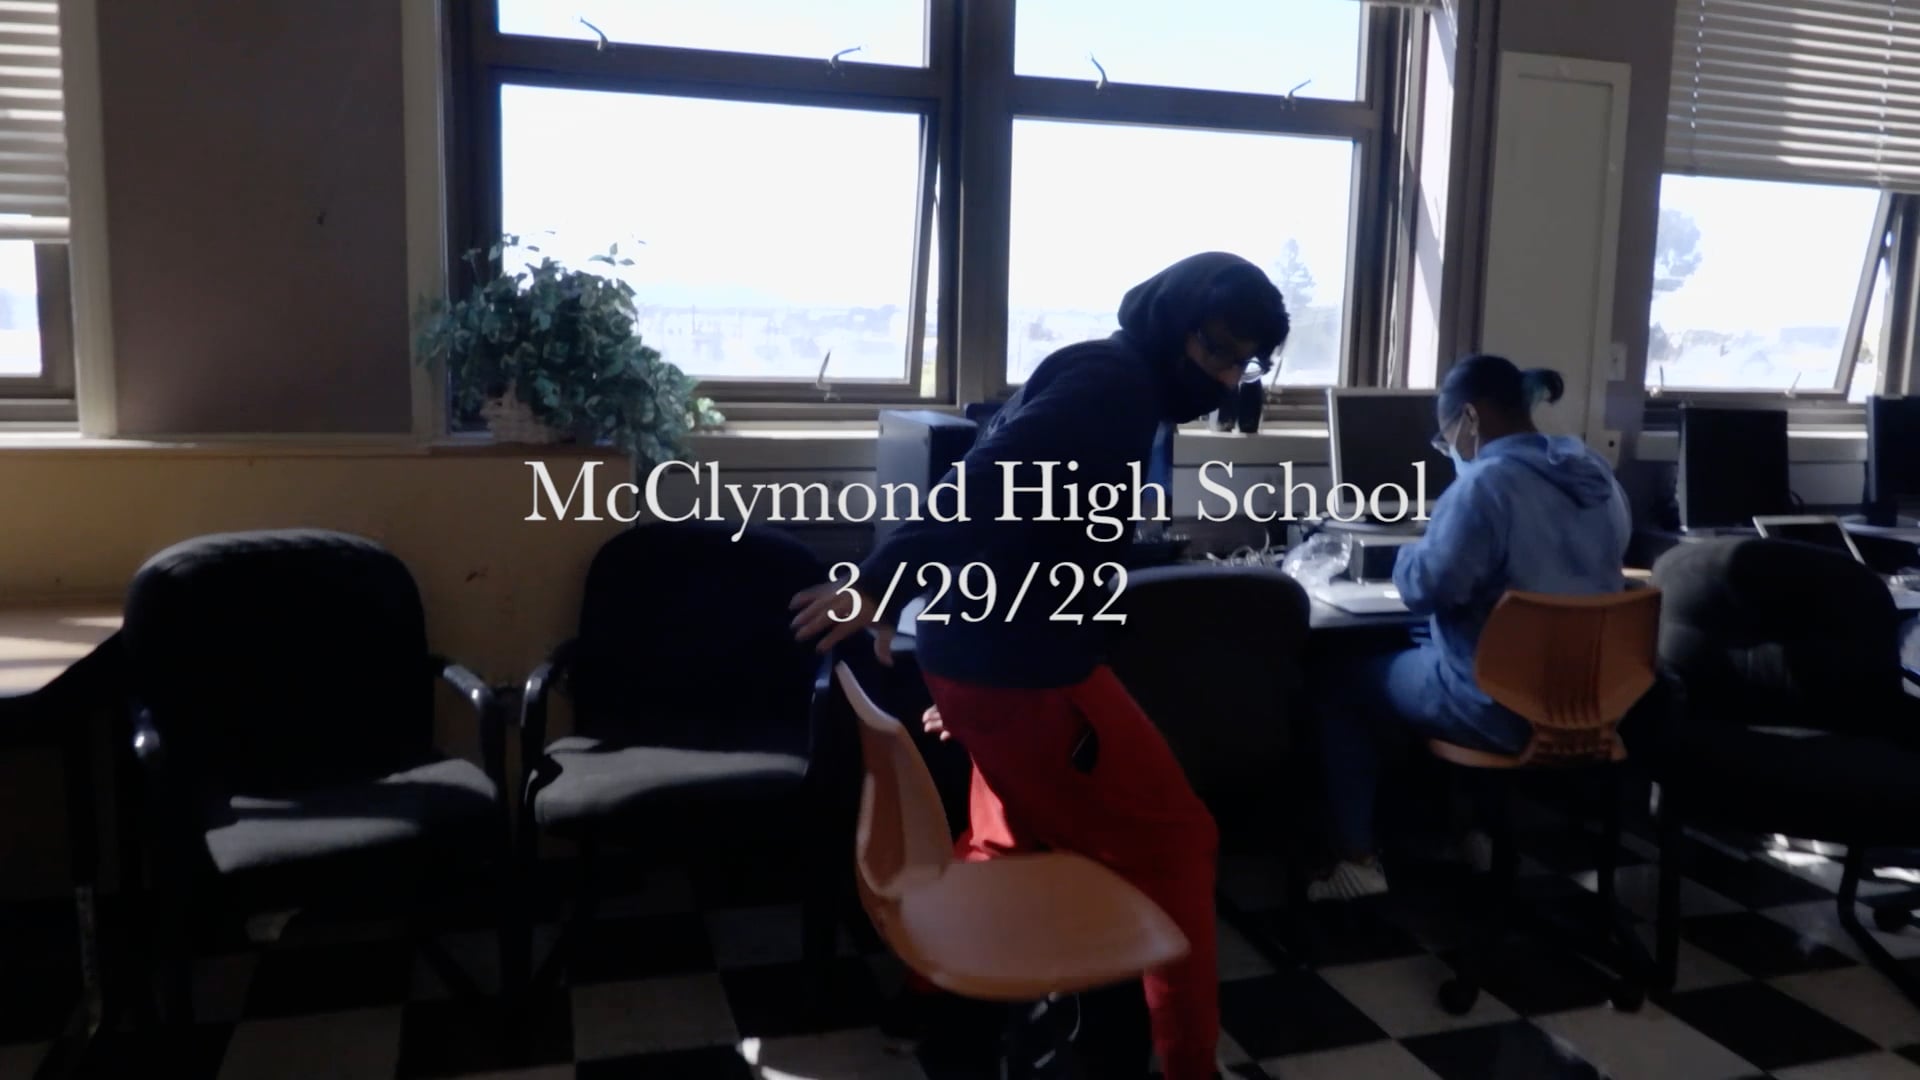 RRR Computer McClymond High School